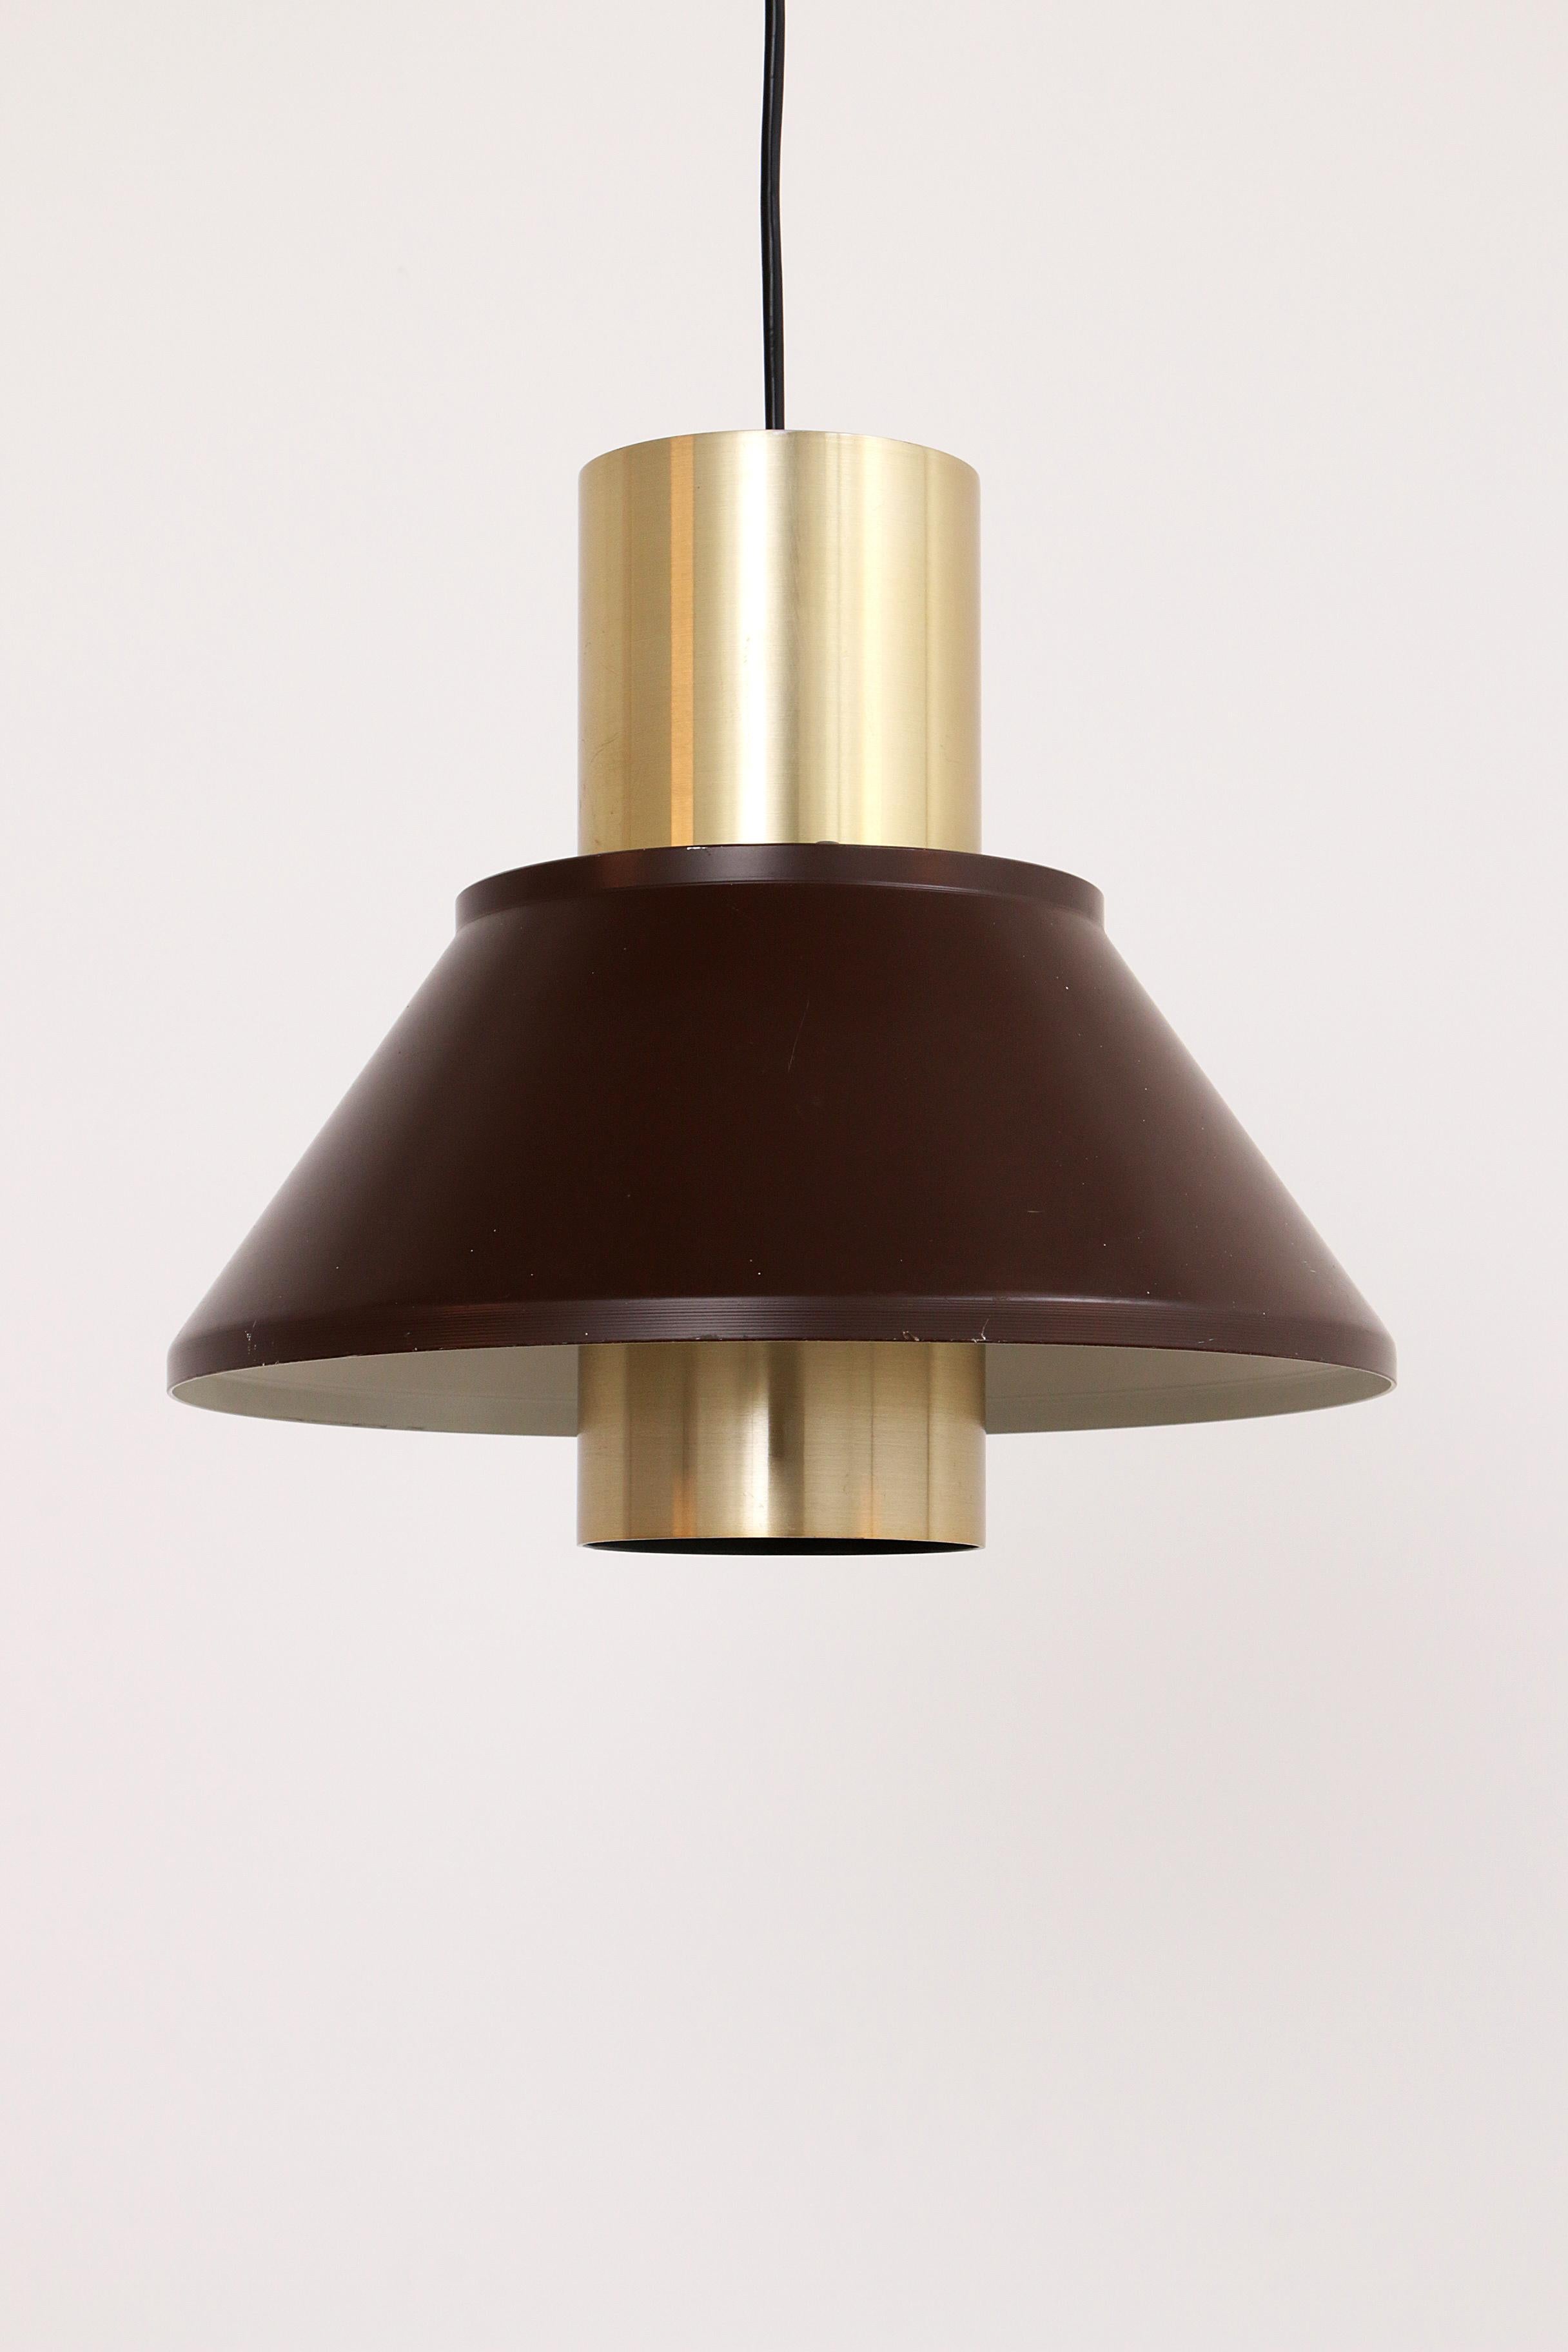 Découvrez la beauté intemporelle de la lampe suspendue Vintage Jo Hammerborg, une pièce authentique de l'histoire du design fabriquée par Fog & Morup dans les années 1970. Cette lampe suspendue n'est pas seulement un objet d'éclairage, mais aussi